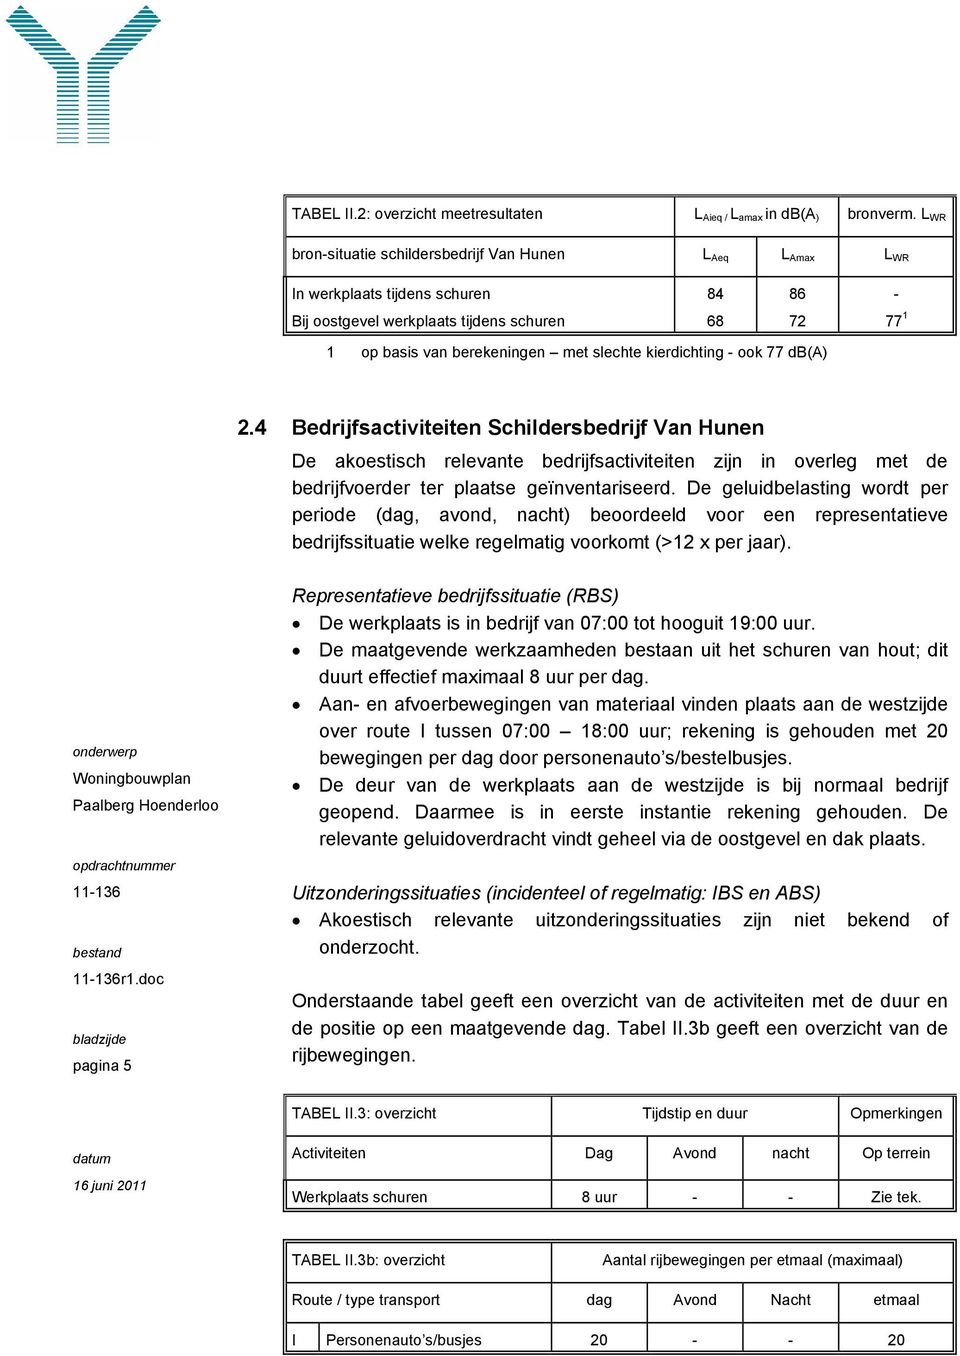 kierdichting - ook 77 db(a) 2.4 Bedrijfsactiviteiten Schildersbedrijf Van Hunen De akoestisch relevante bedrijfsactiviteiten zijn in overleg met de bedrijfvoerder ter plaatse geïnventariseerd.